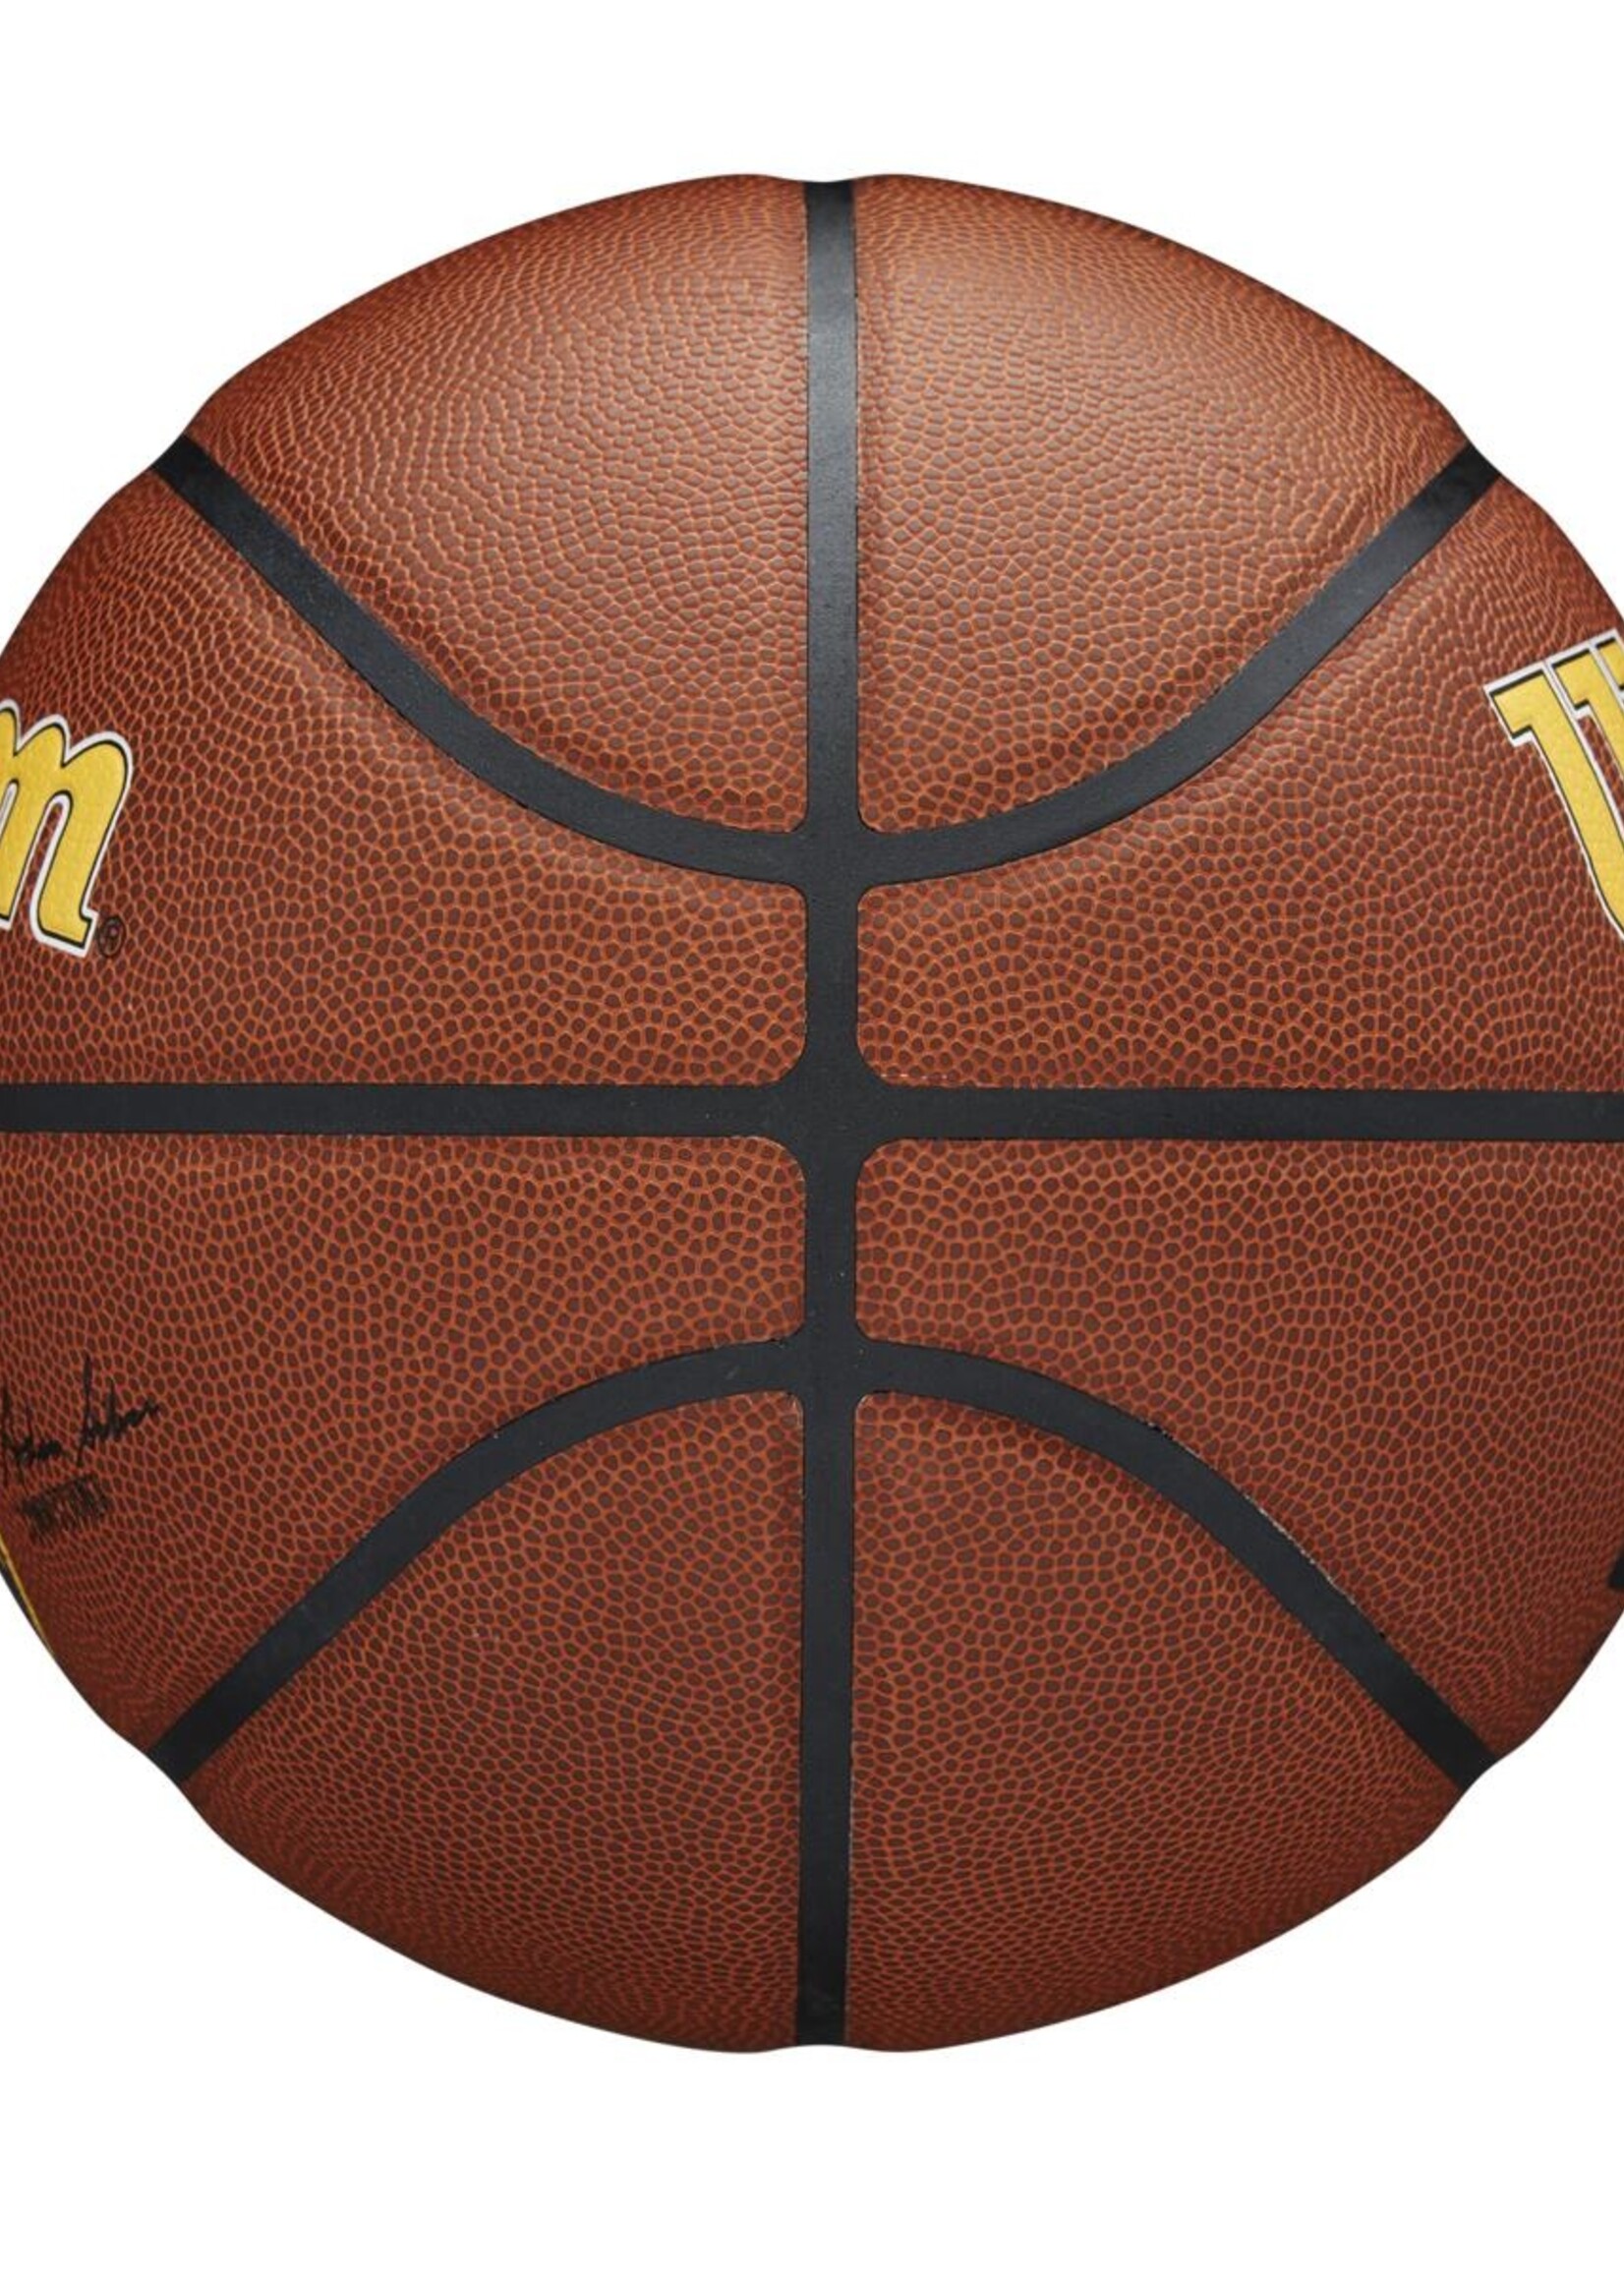 Wilson Wilson NBA DENVER NUGGETS Composite Indoor / Outdoor Basketbal (7)